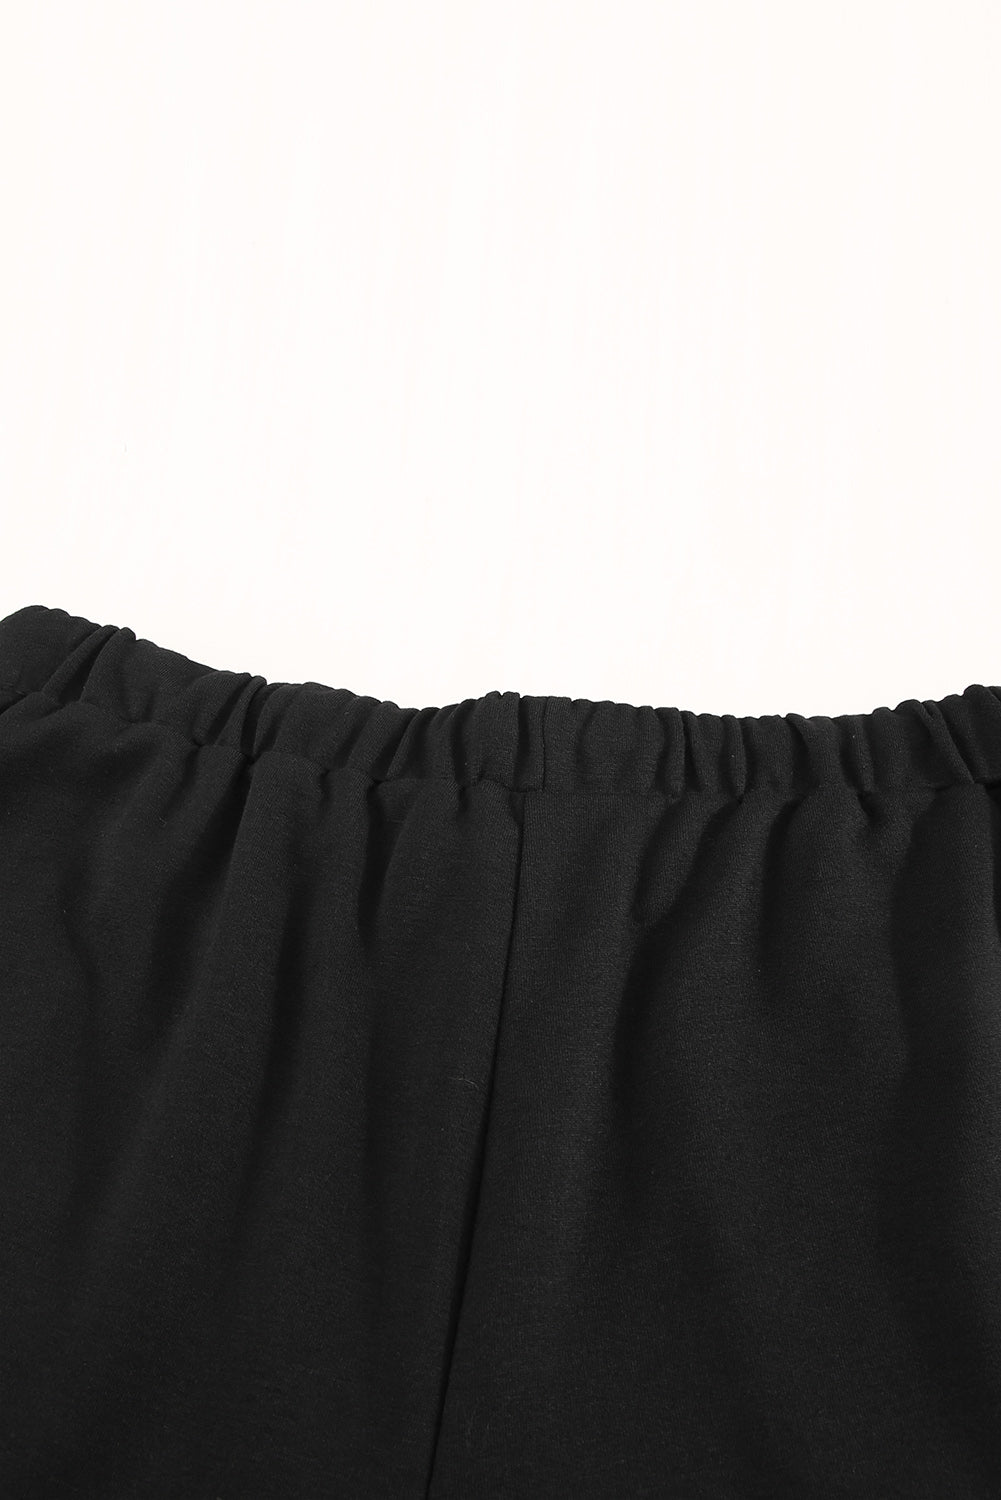 Pantaloncini con tasche in vita elastica con coulisse neri